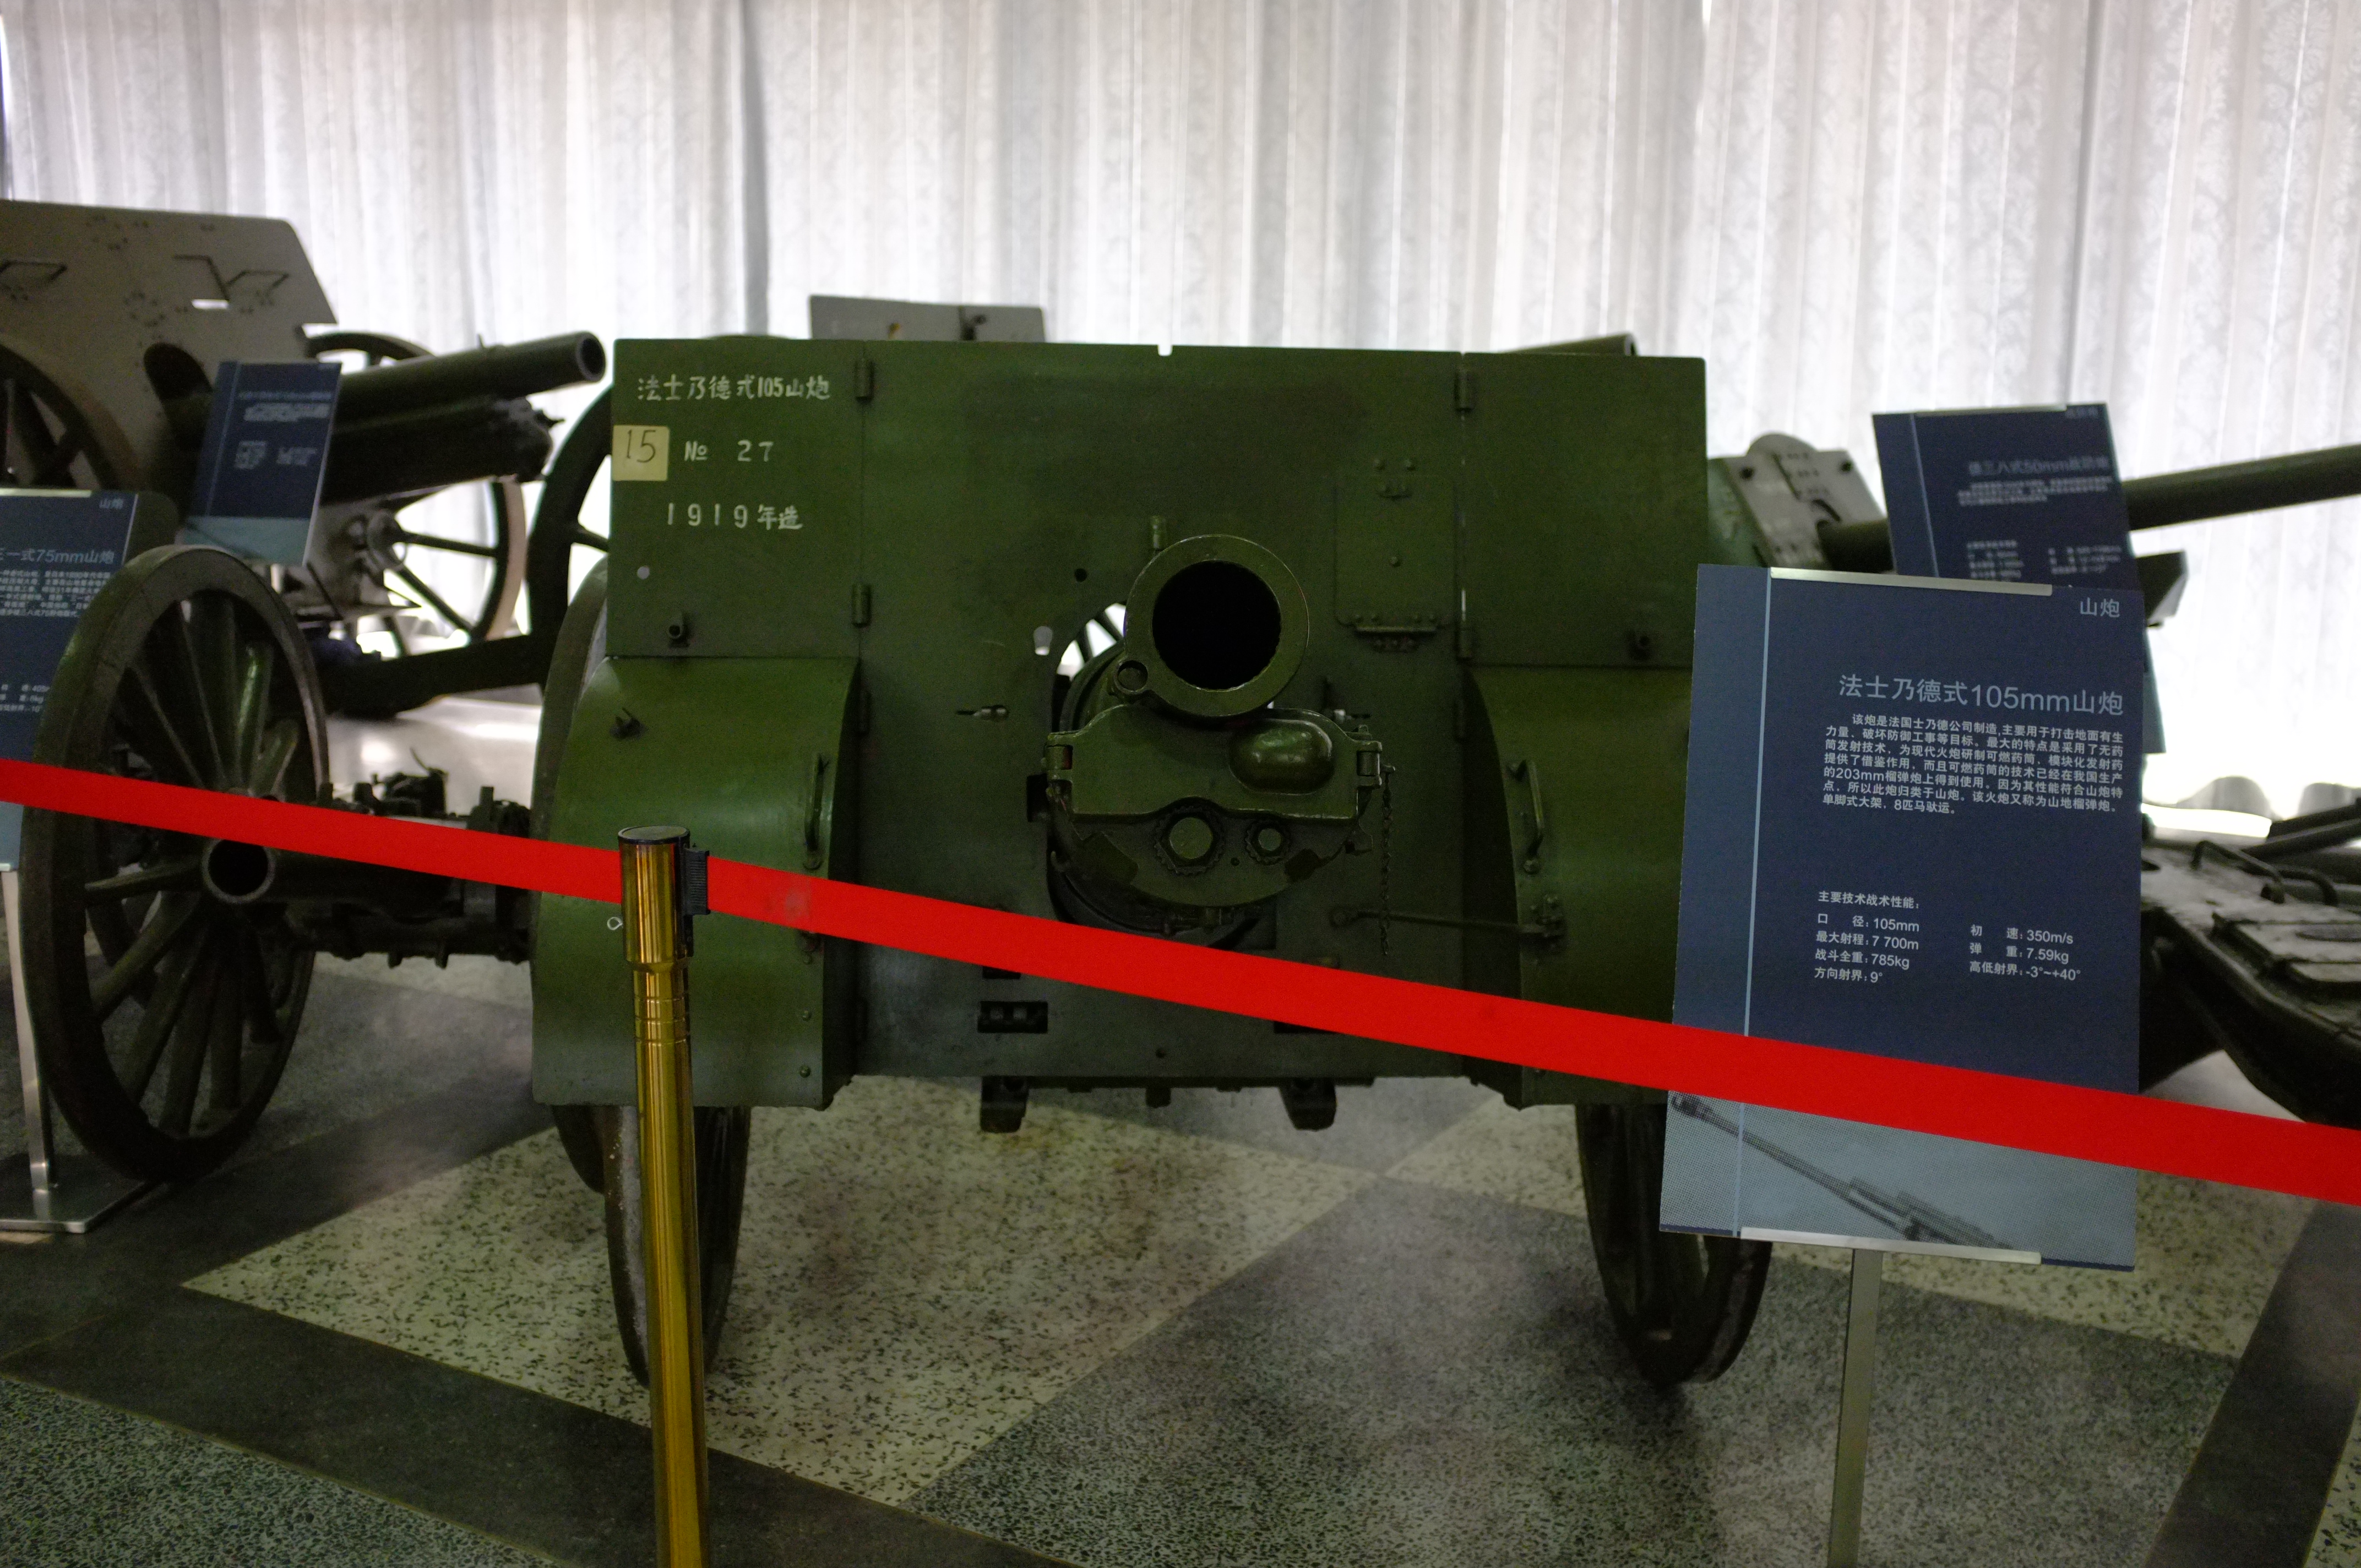 法制施耐德105毫米口径山炮,采用无烟火药发射技术的攻击敌方阵地工事